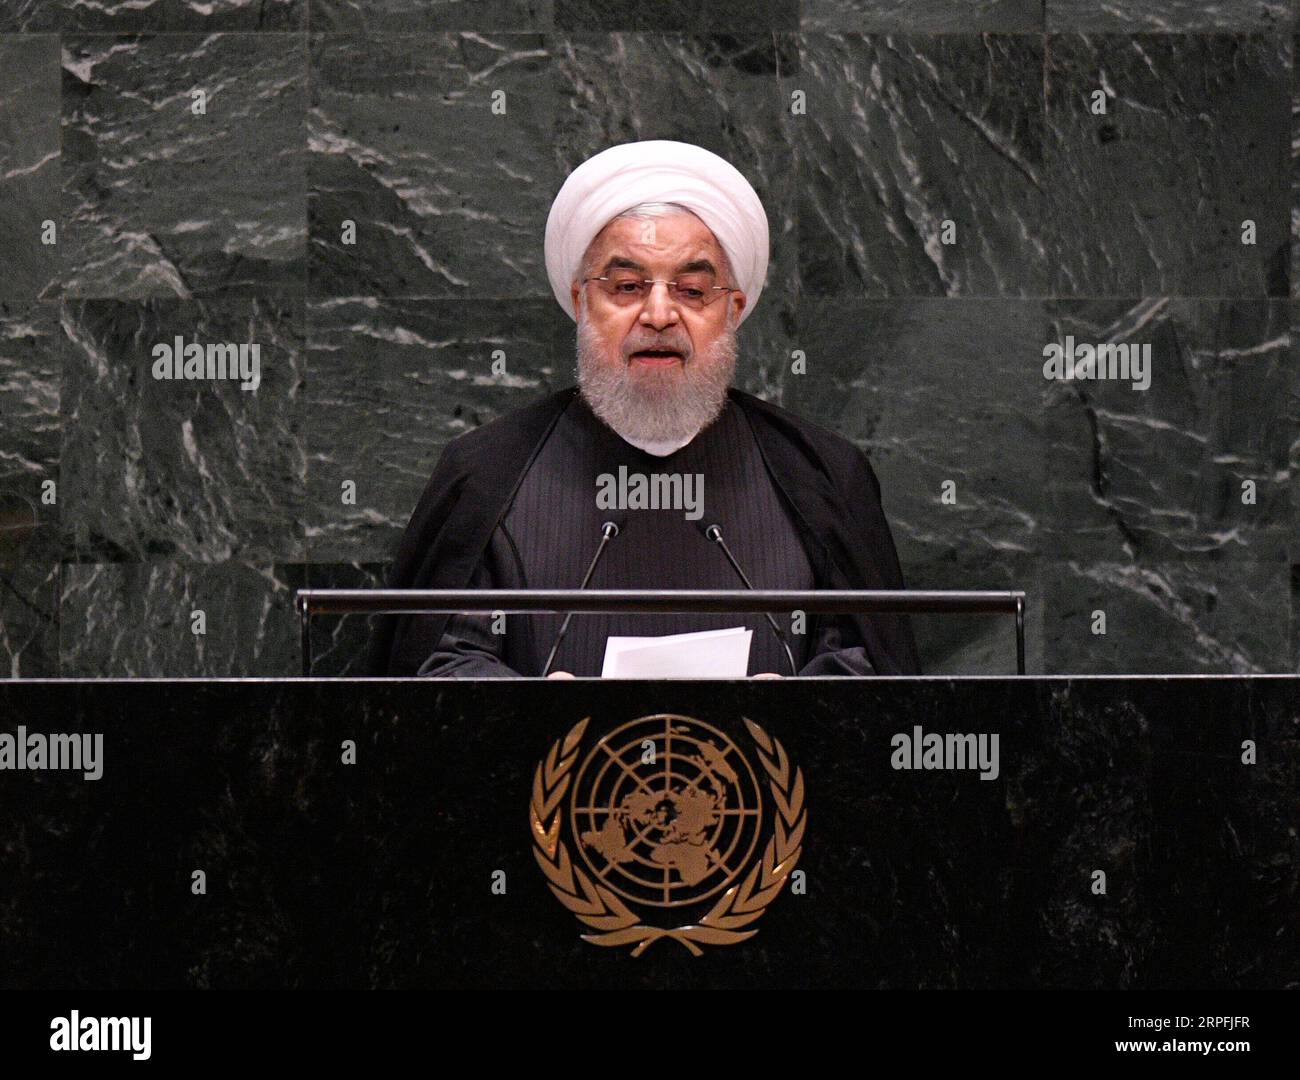 190925 -- NATIONS UNIES, 25 septembre 2019 -- le président iranien Hassan Rouhani s'adresse au débat général de la 74e session de l'Assemblée générale des Nations Unies au siège des Nations Unies à New York, le 25 septembre 2019. Rouhani mercredi a exclu les négociations avec les États-Unis à moins que ces derniers ne lèvent d’abord les sanctions contre son pays. ONU-ASSEMBLÉE GÉNÉRALE-DÉBAT GÉNÉRAL-IRAN LIUXJIE PUBLICATIONXNOTXINXCHN Banque D'Images